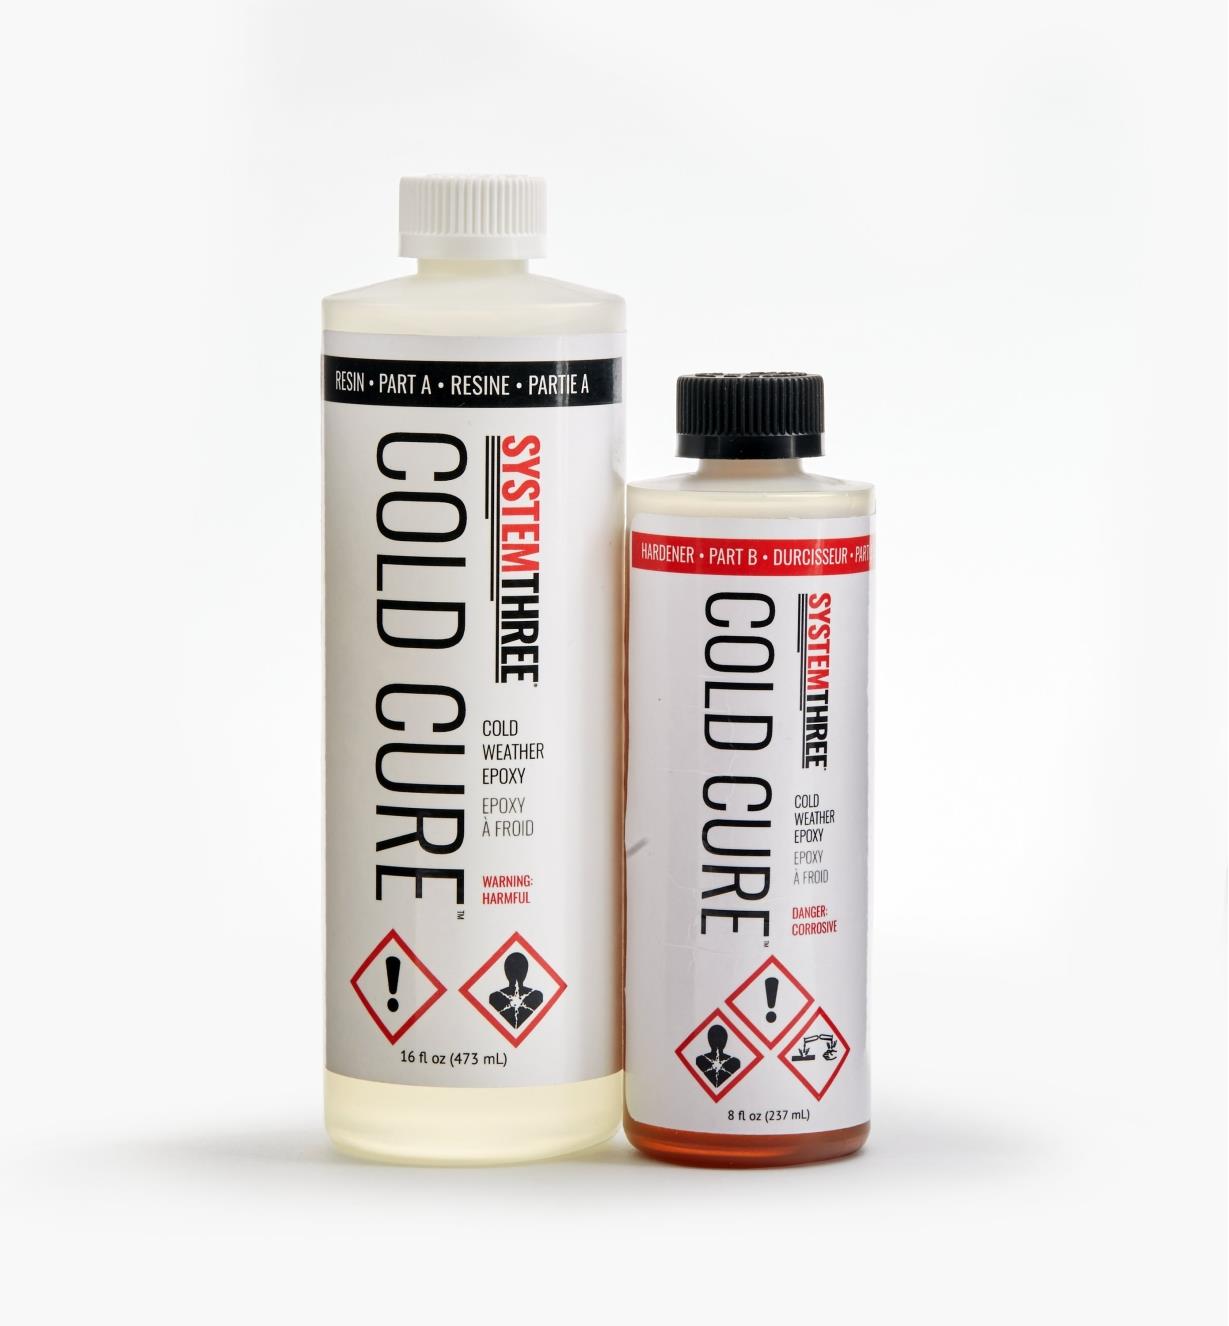 56Z7300 - Colle Cold Cure, 710 ml (24 oz liq.)